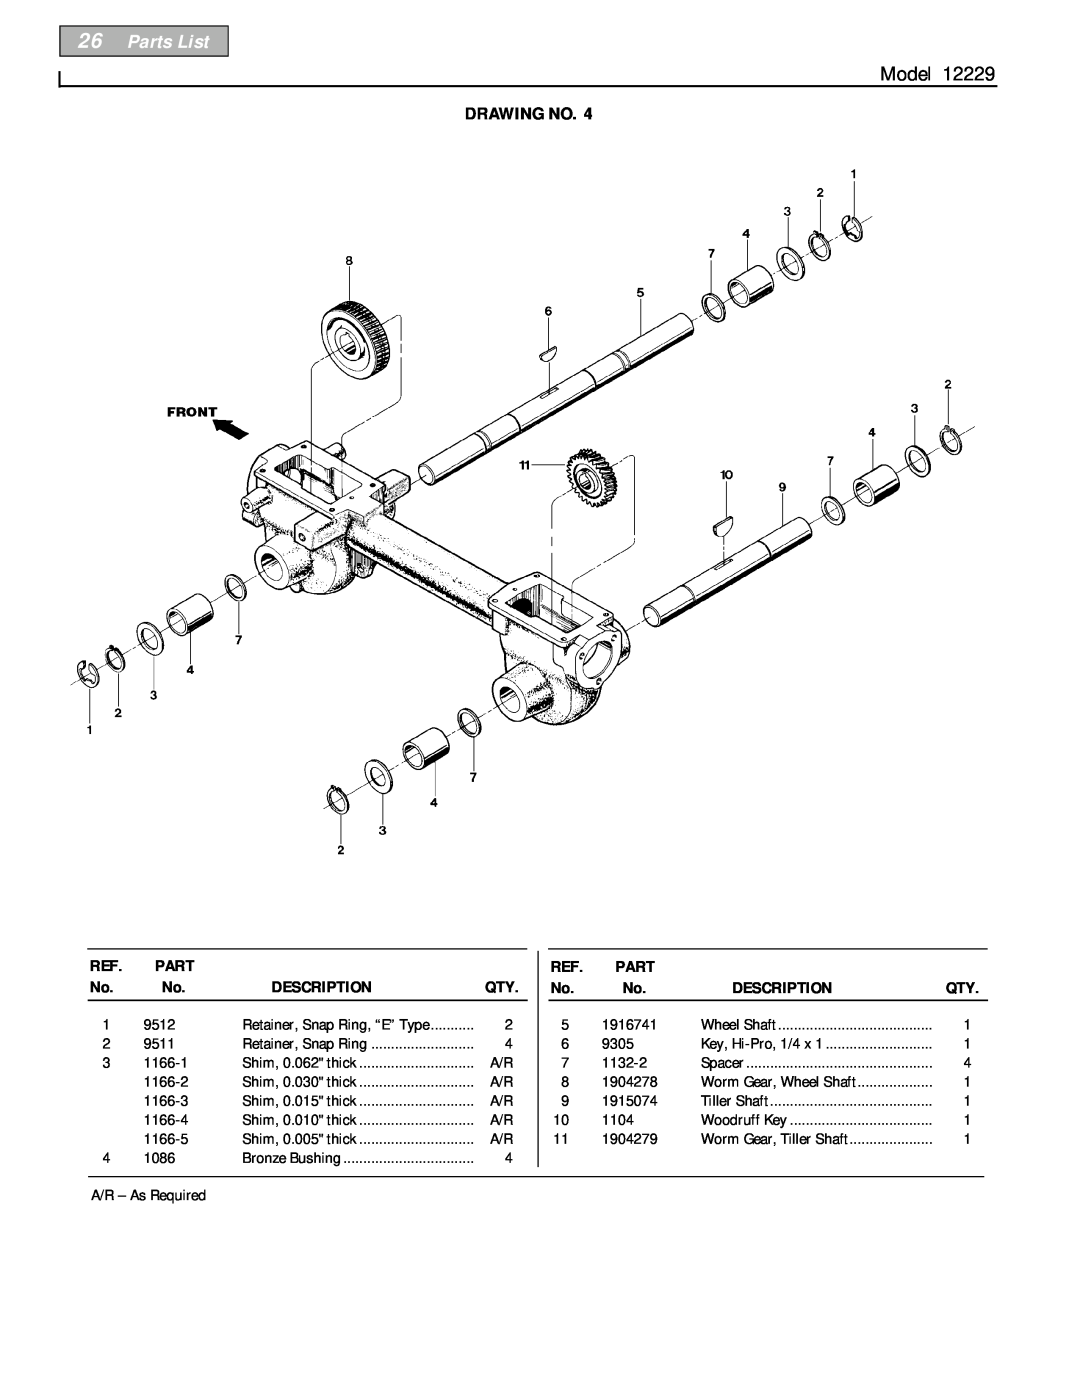 Bolens 12229 owner manual Parts List, Model, Drawing No, Description 